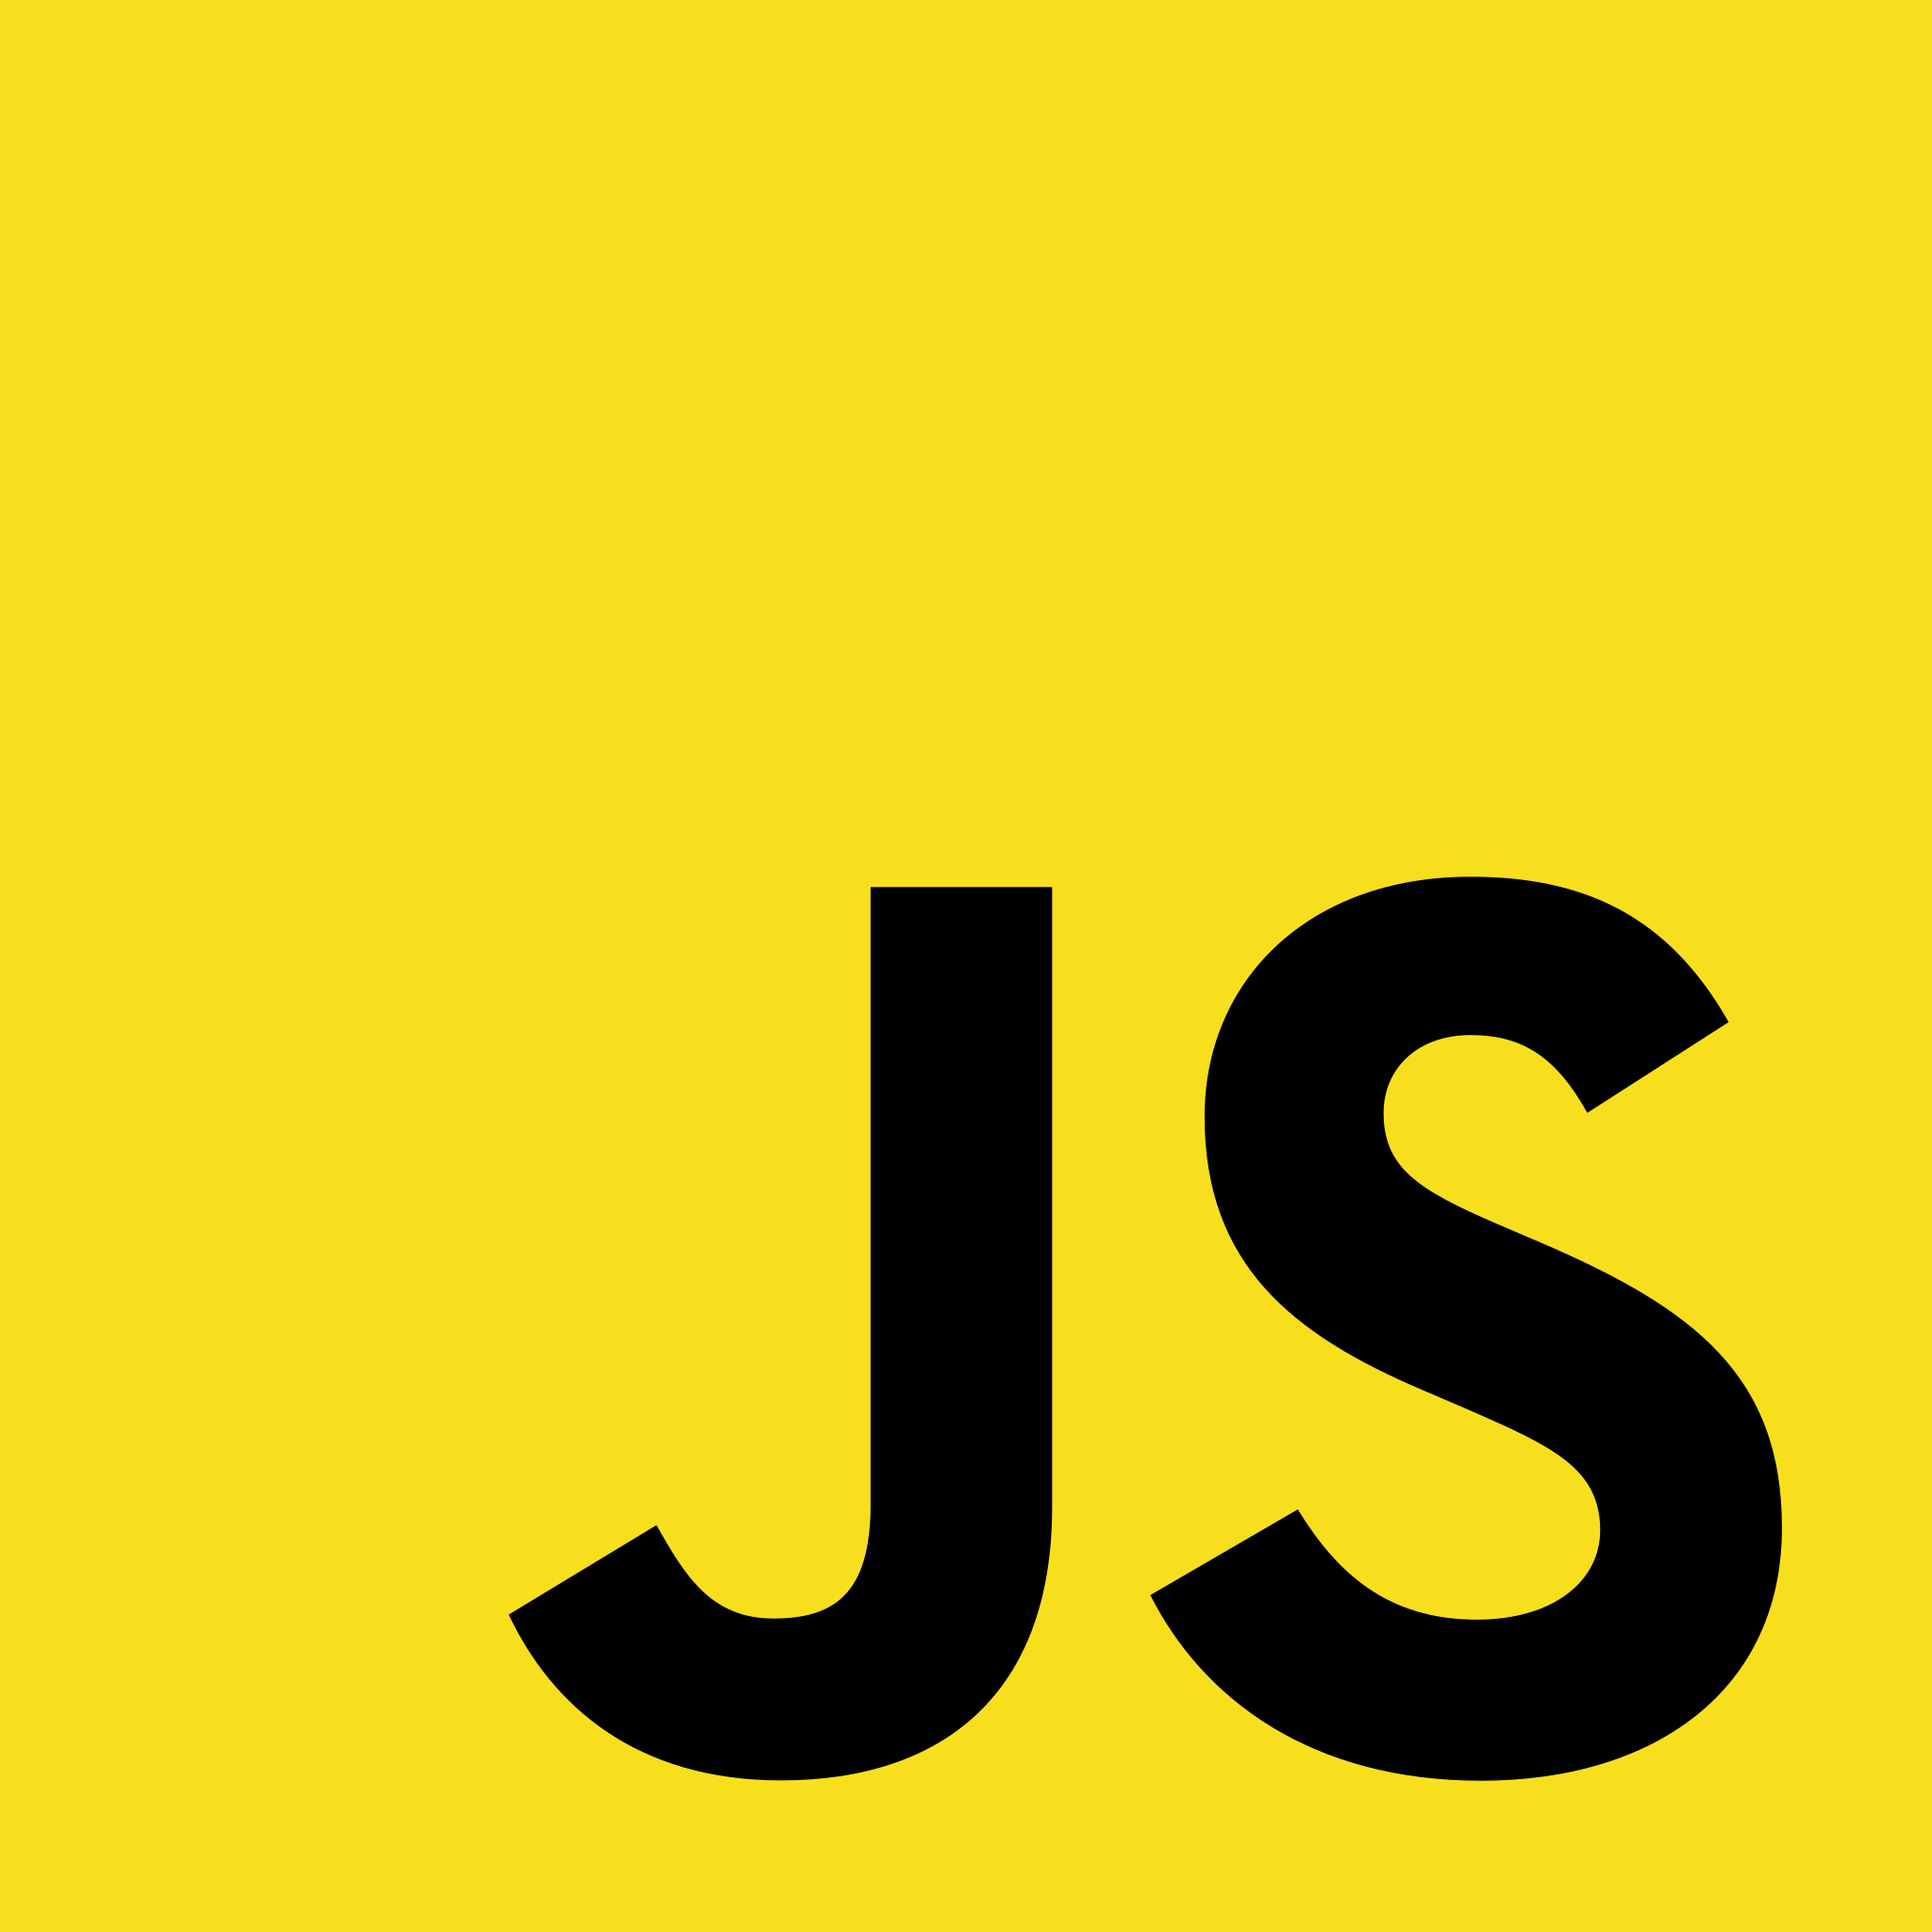 Logo do Js